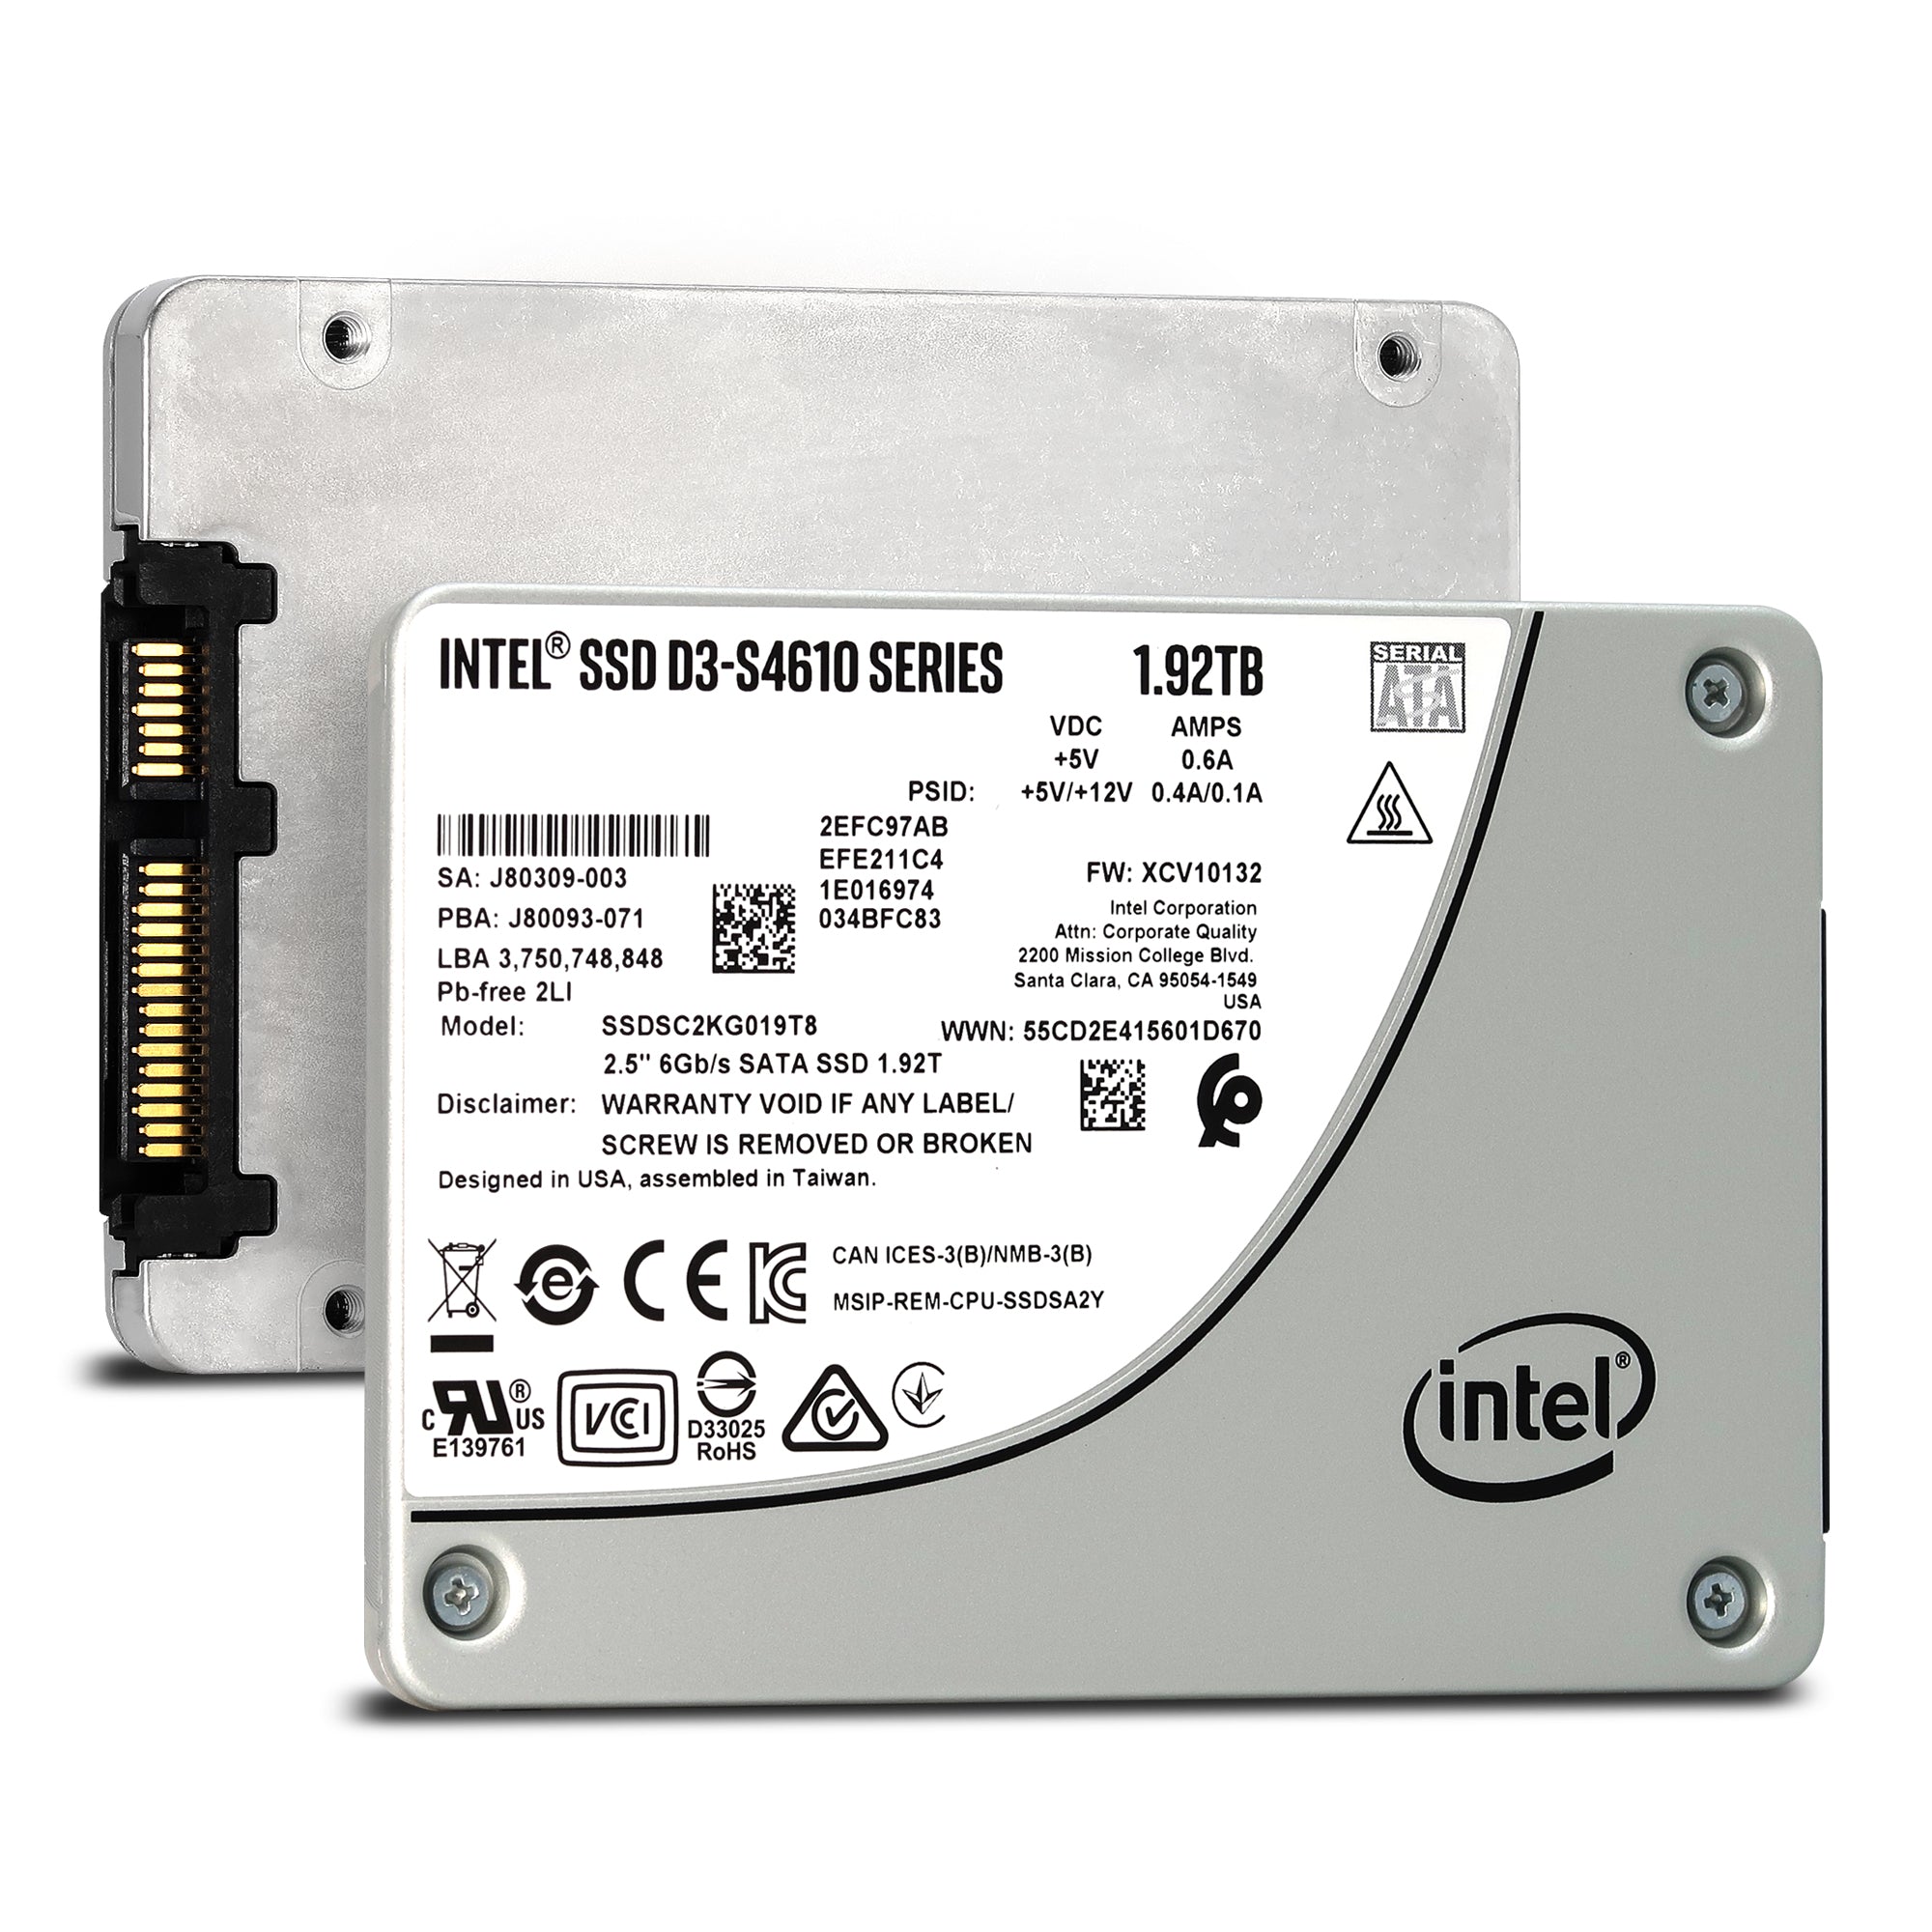 S4610 SSDSC2KG019T8 SATA SSD